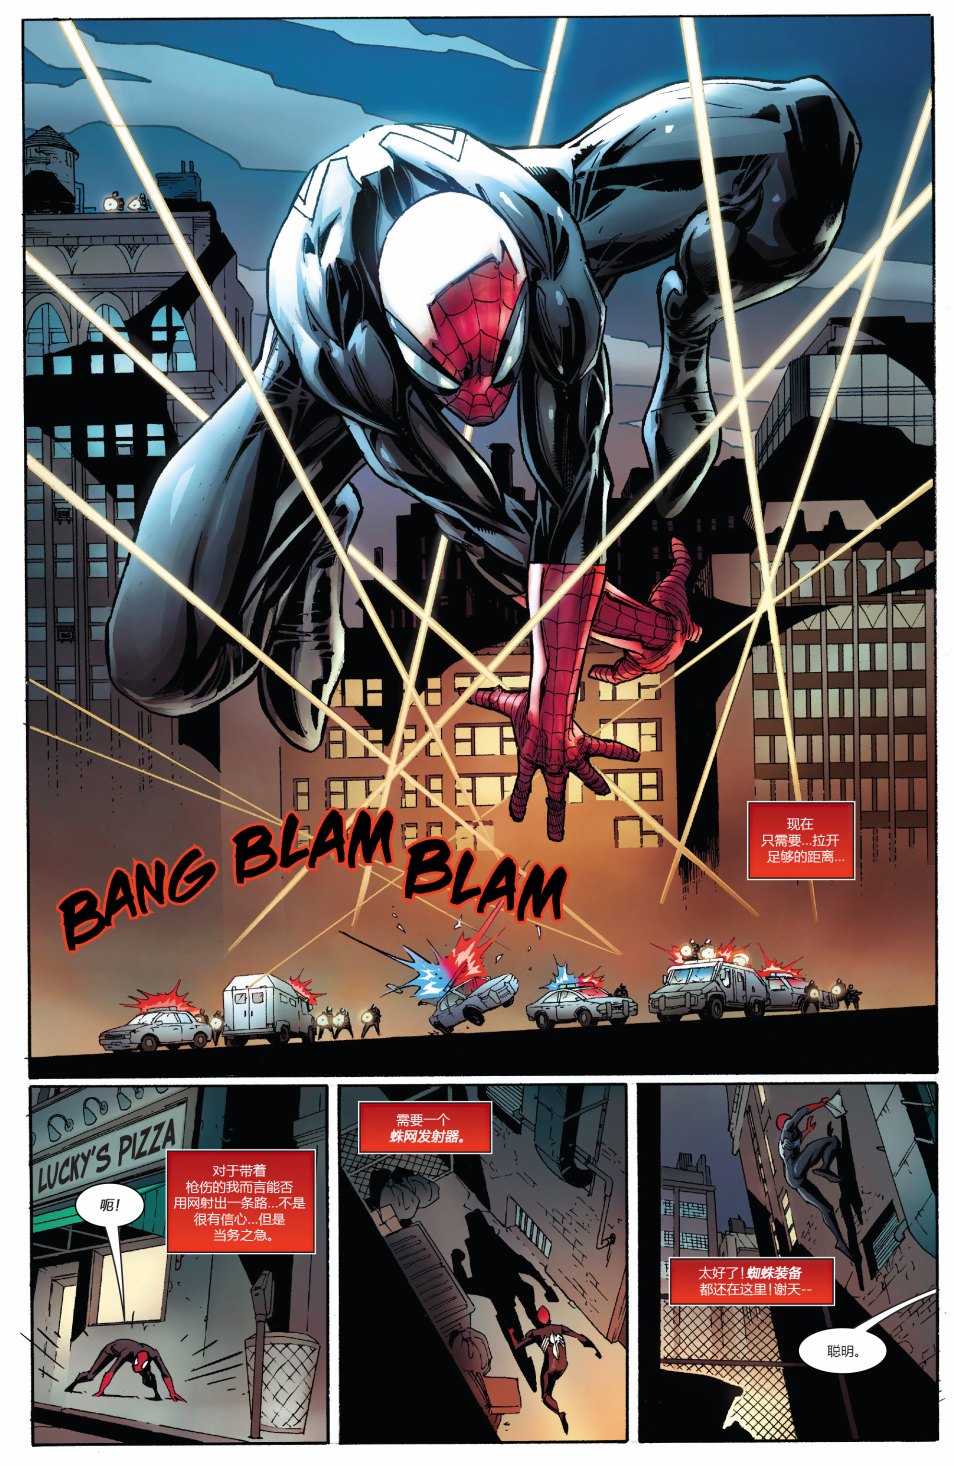 漫威传承 - 彼得·帕克:不可思议的蜘蛛侠#297 - 2